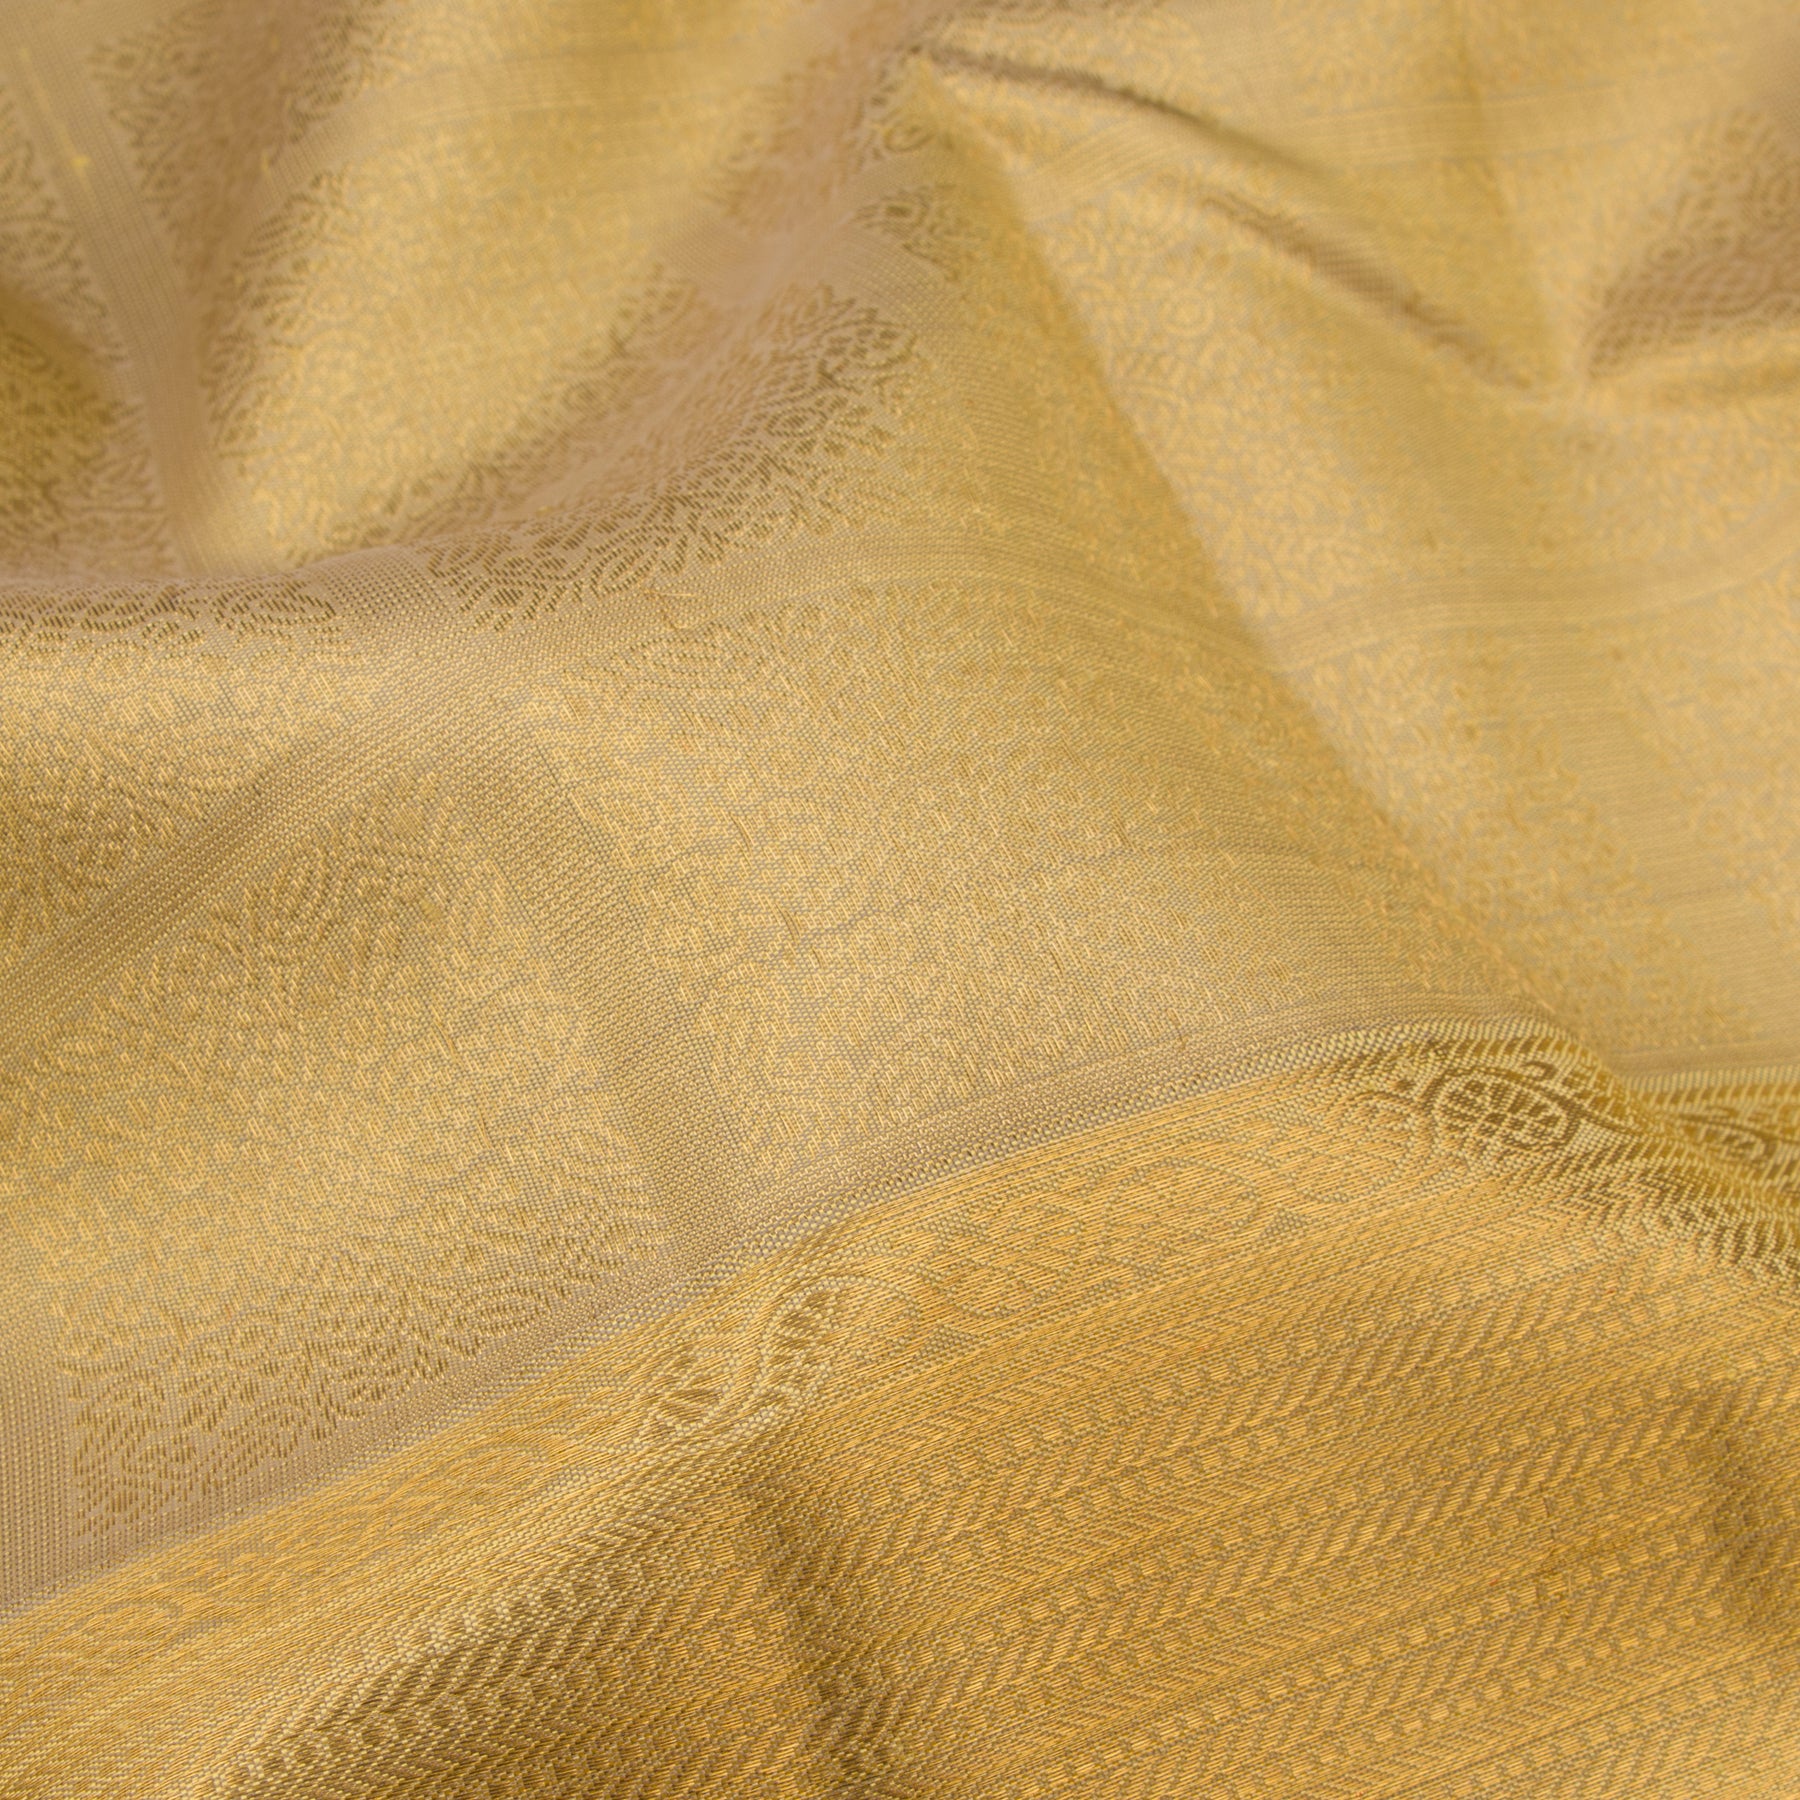 Kanakavalli Kanjivaram Silk Sari 22-612-HS001-10137 - Fabric View